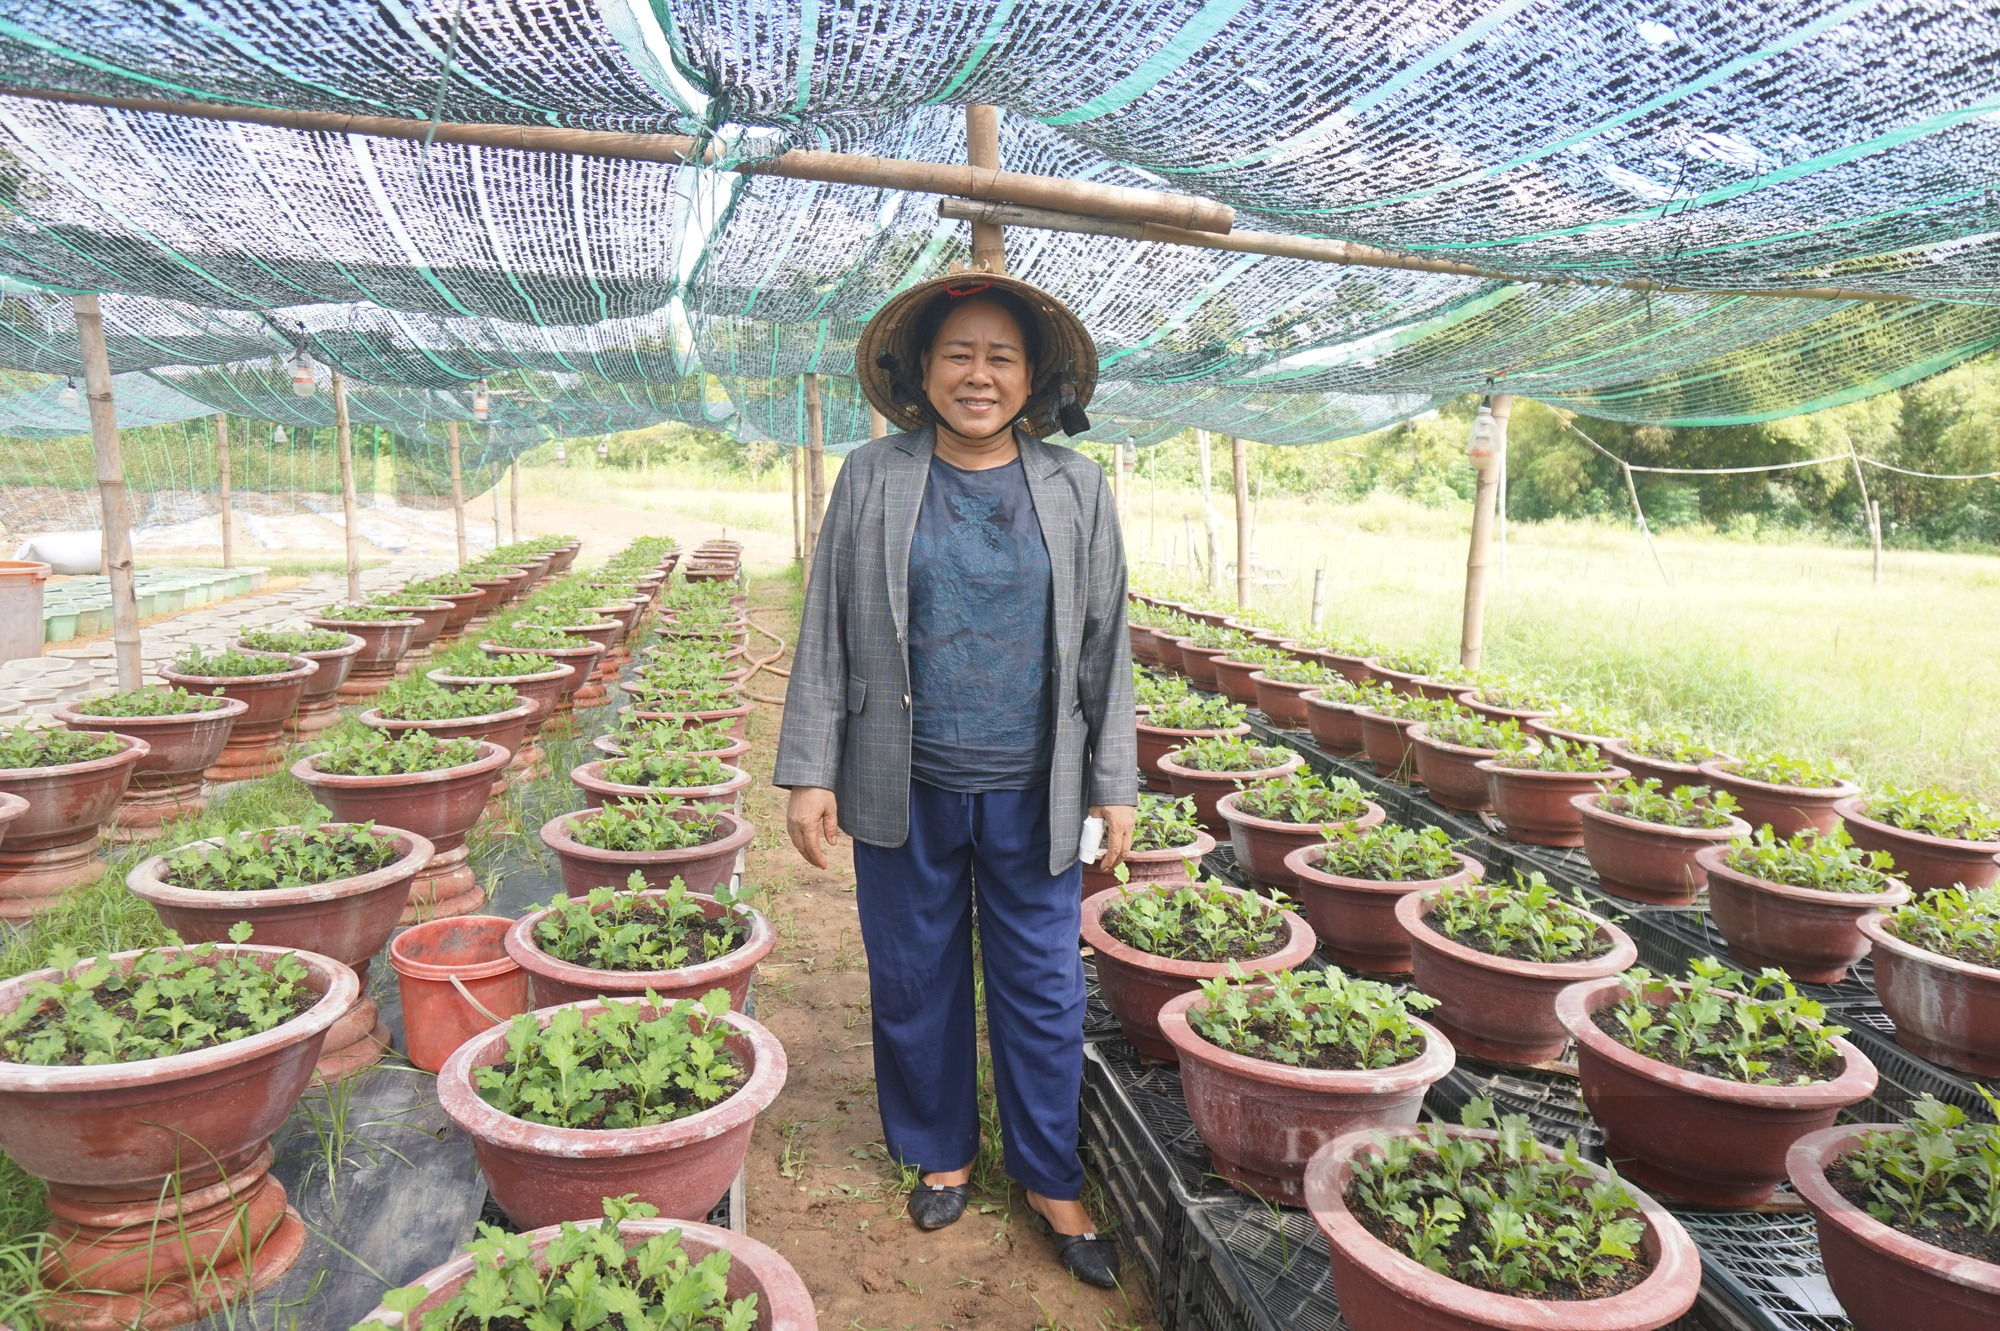 Đam mê trồng hoa, một phụ nữ ở Đà Nẵng thu lãi hàng trăm triệu mỗi năm - Ảnh 4.